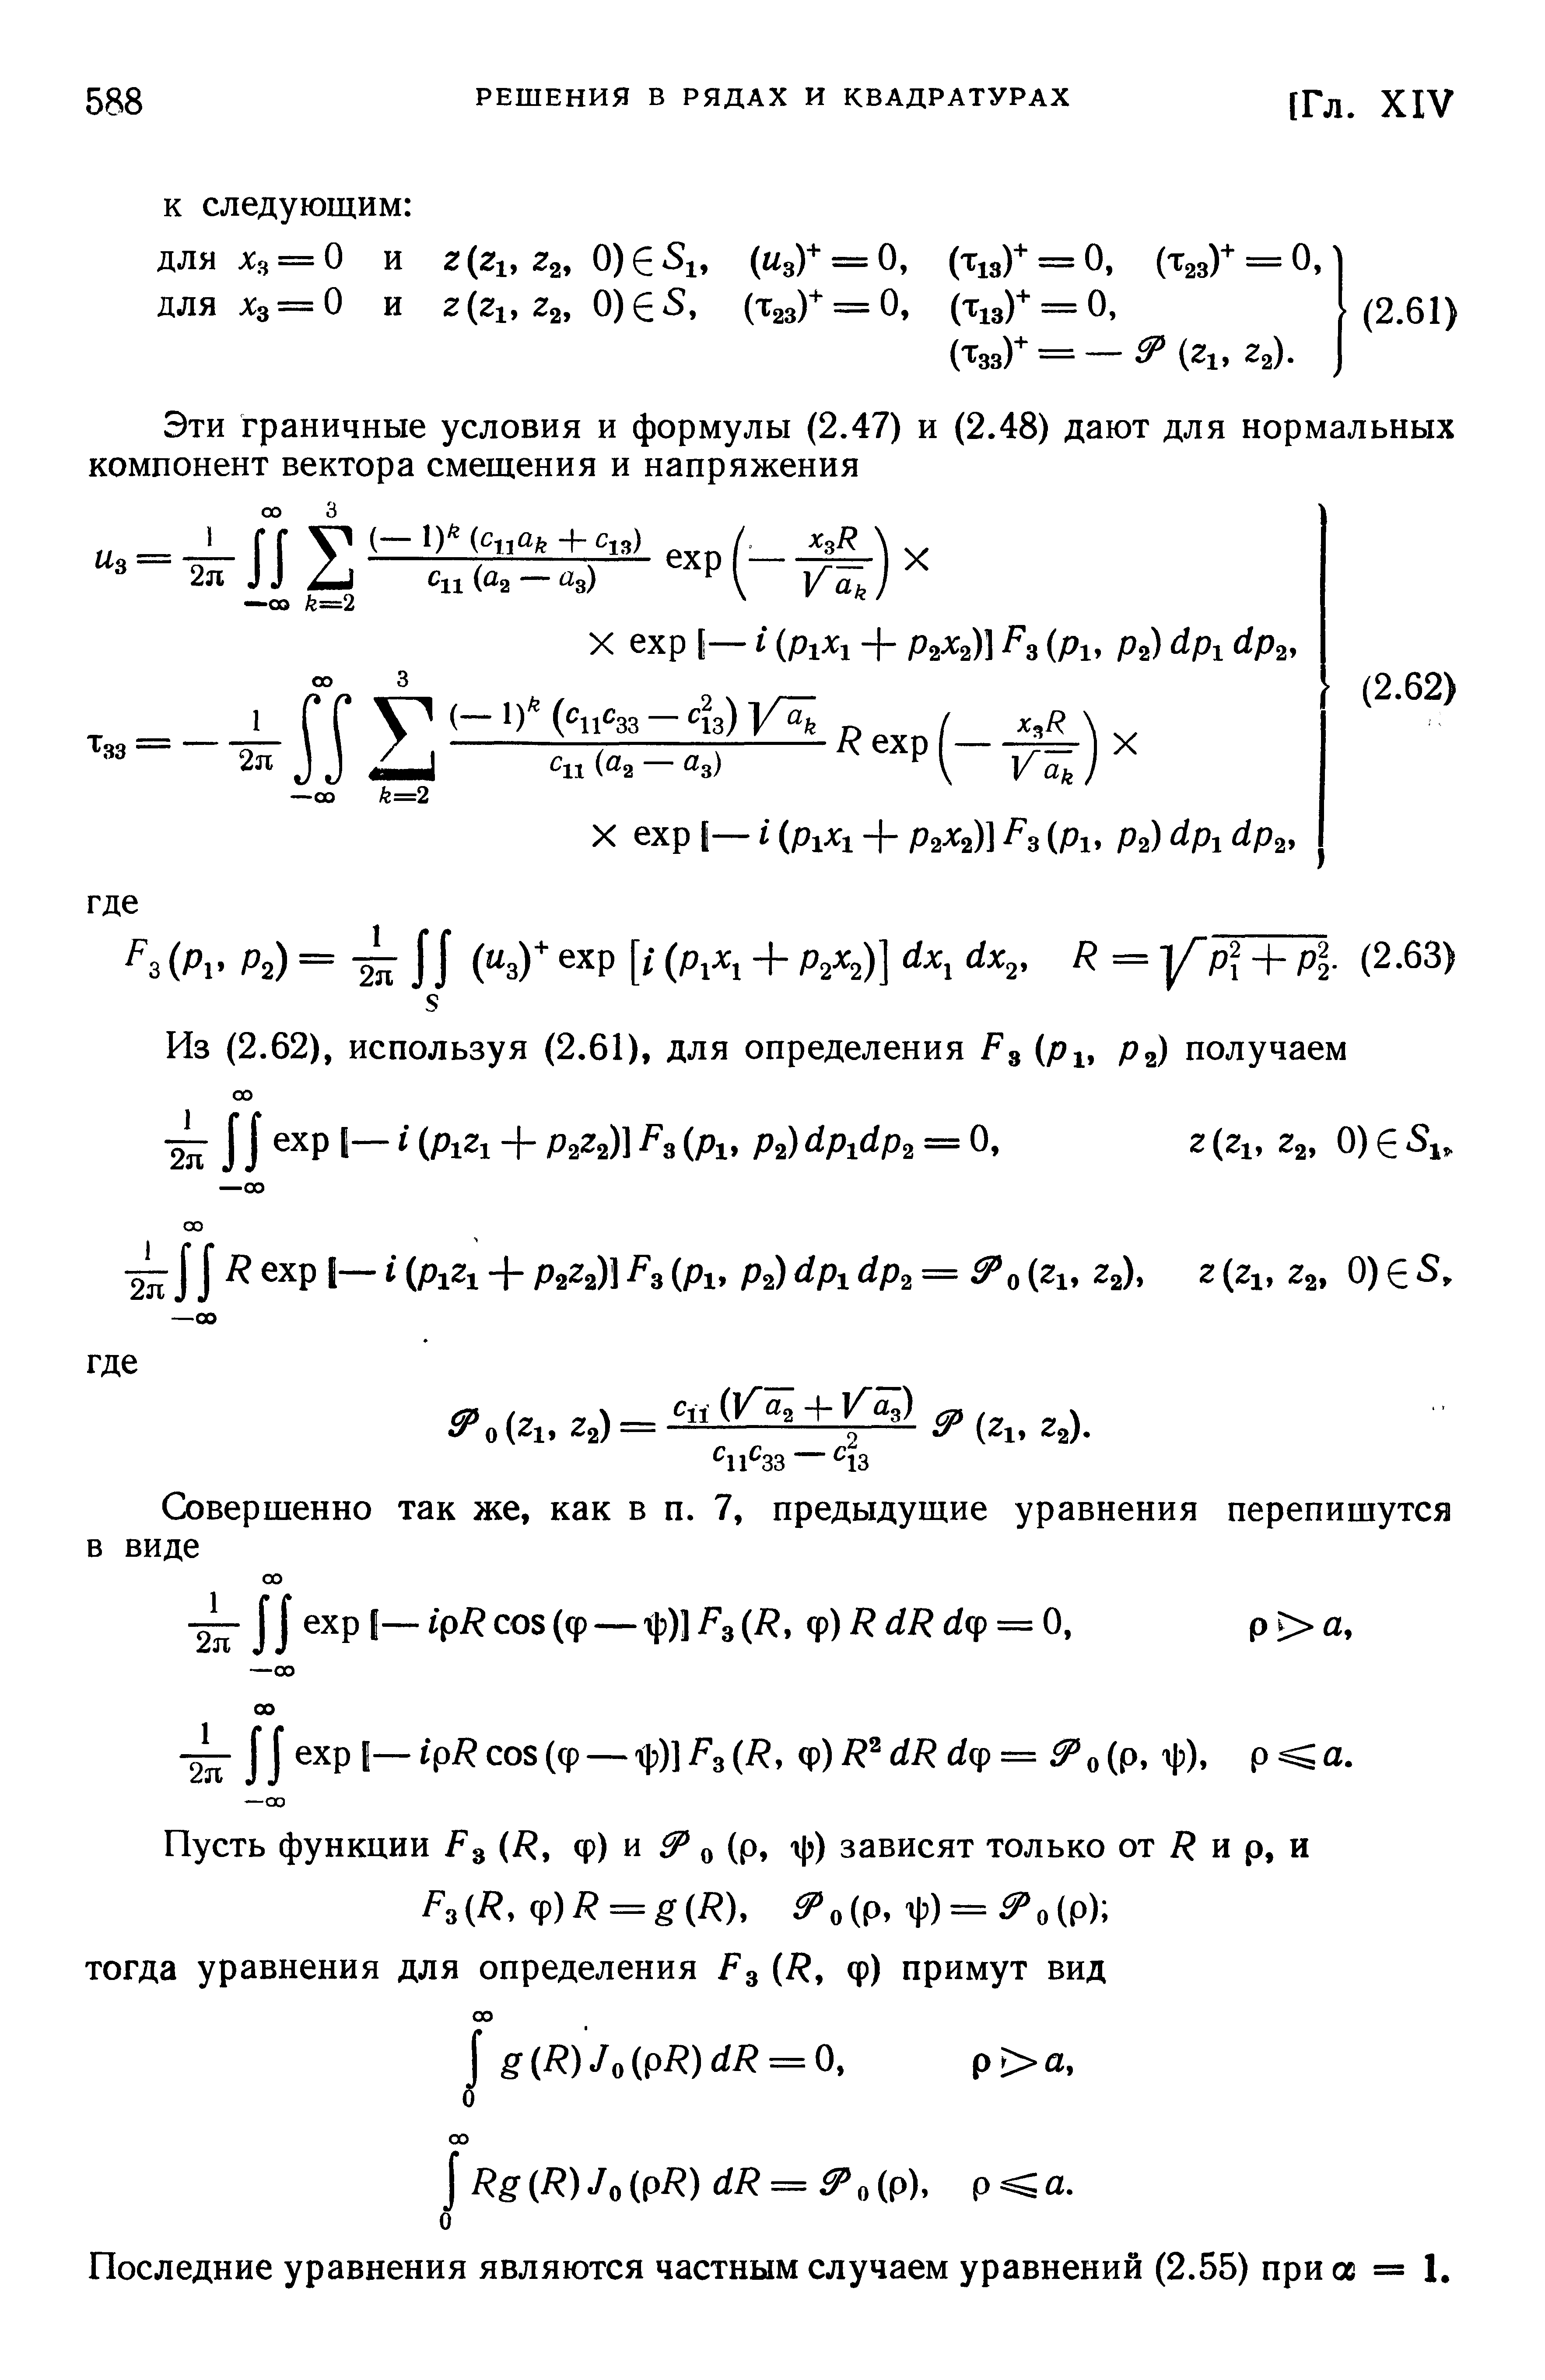 Последние уравнения являются частным случаем уравнений (2.55) при ос = 1.
